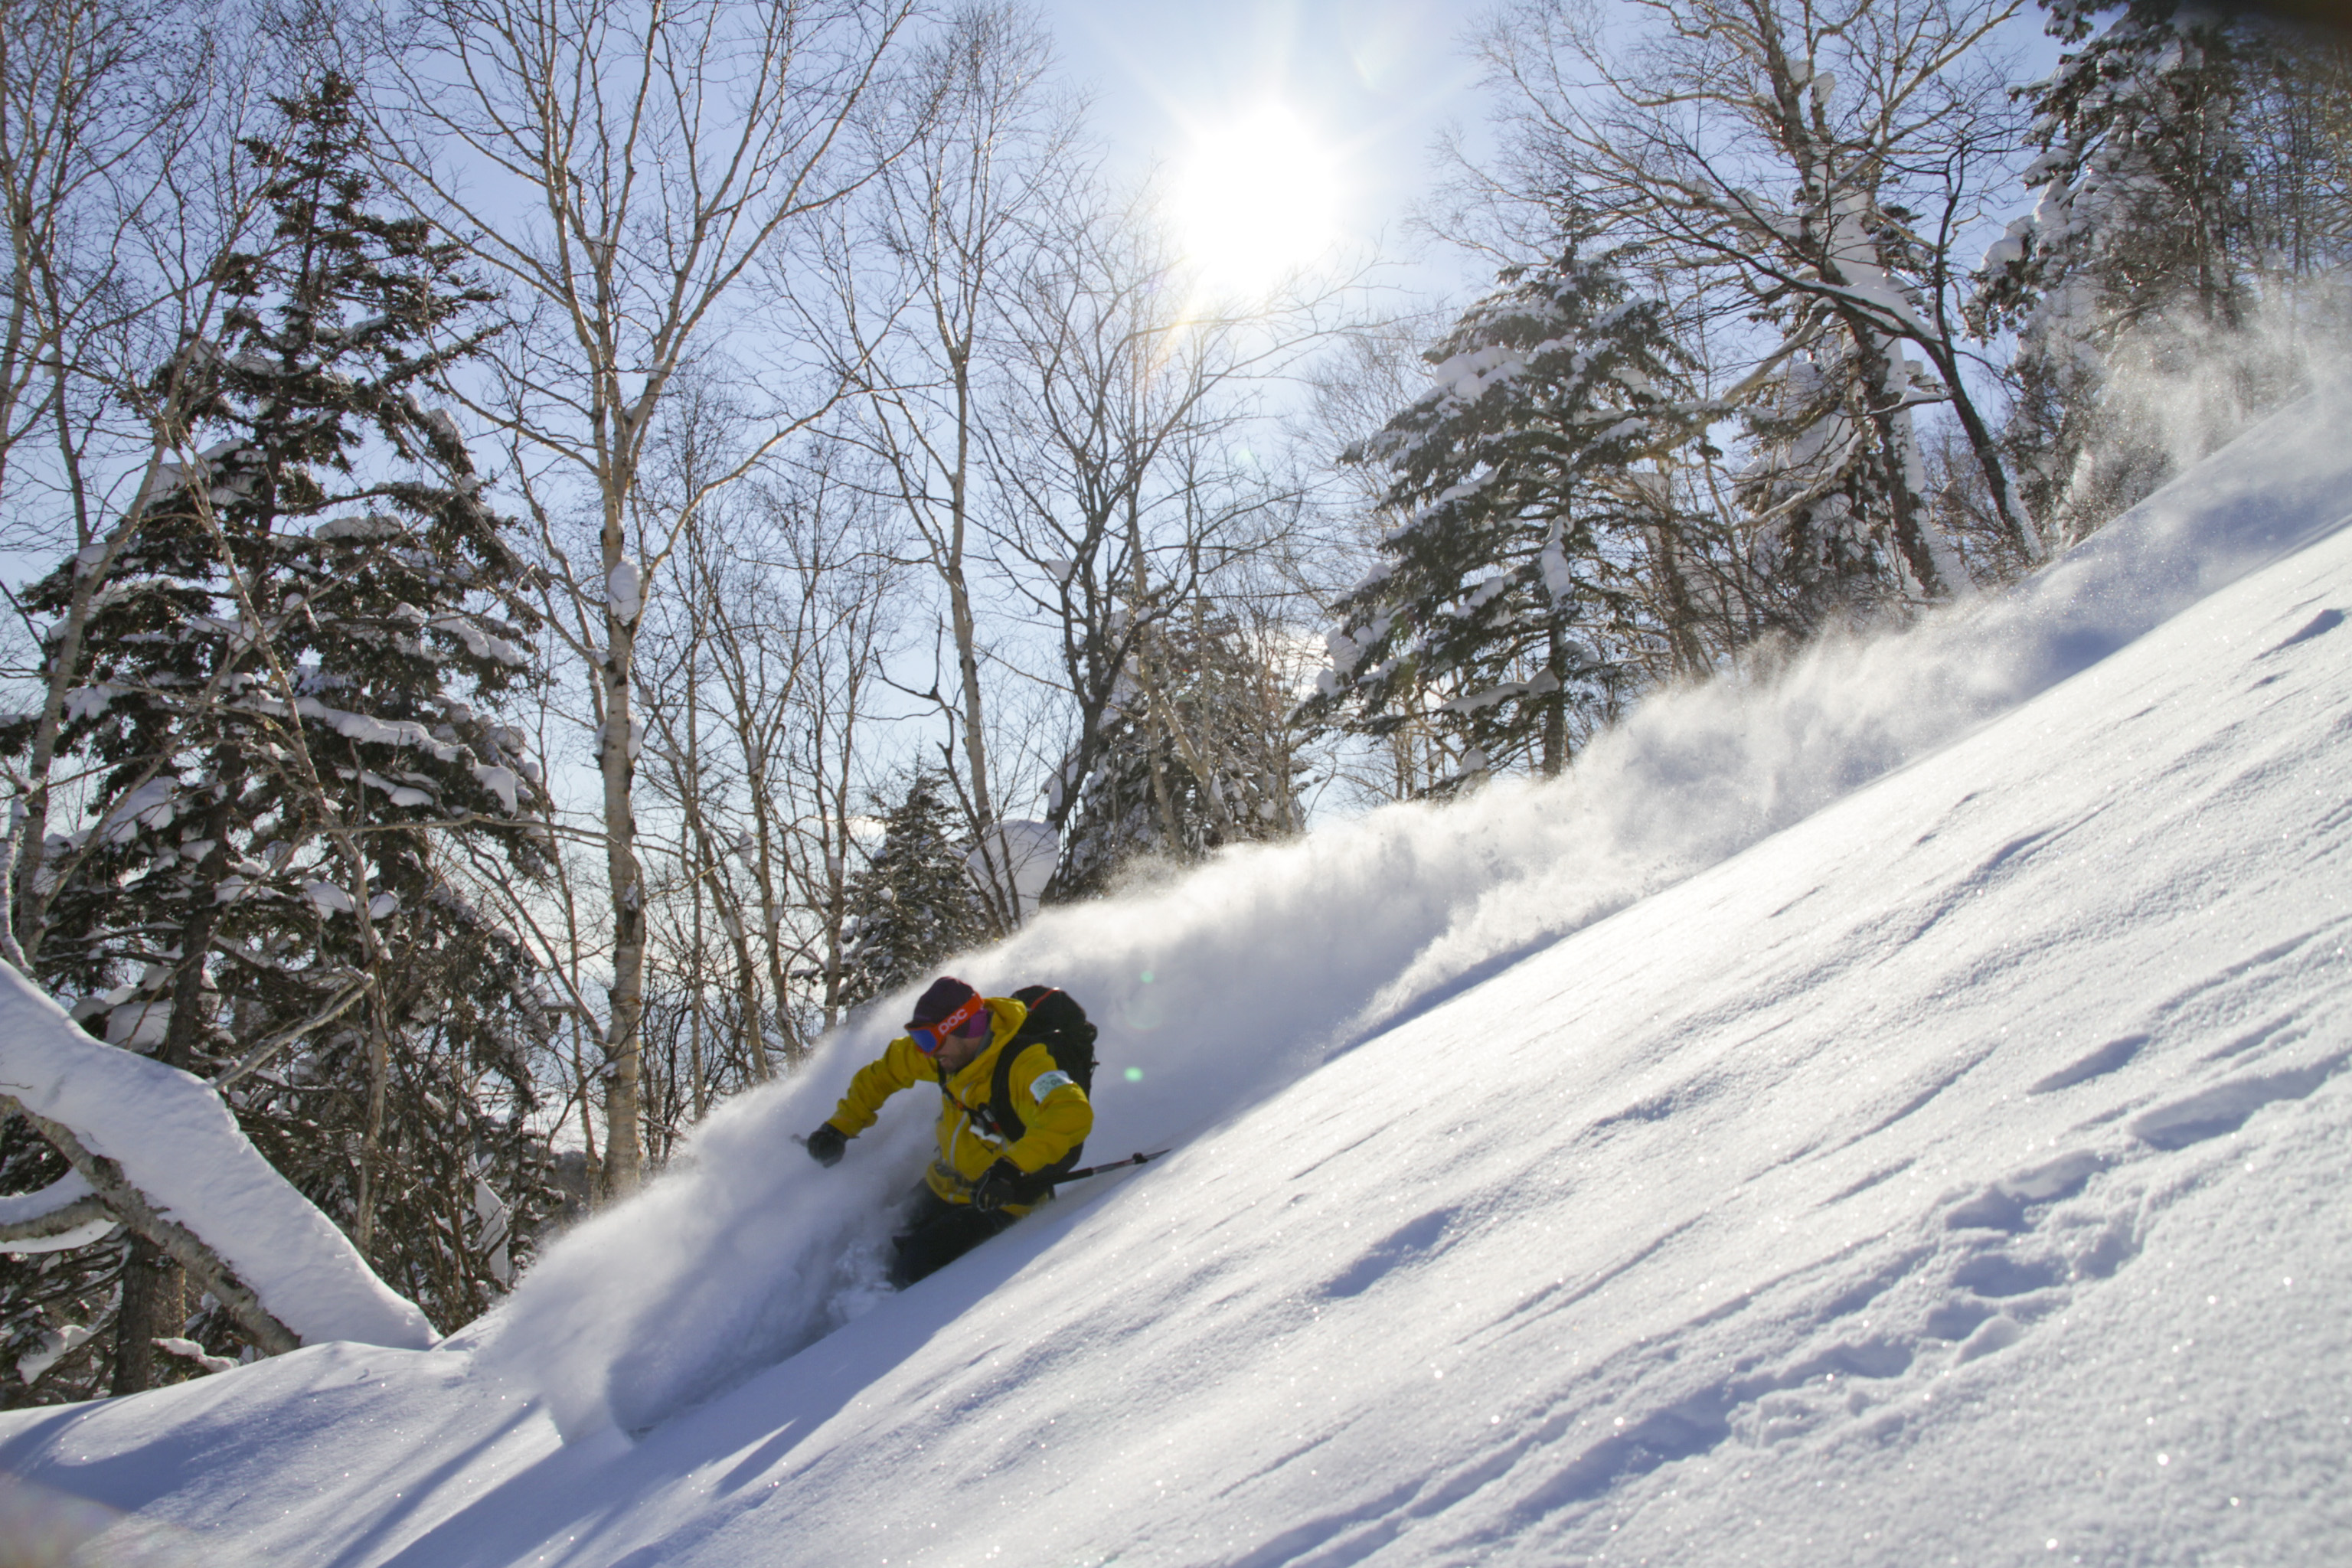 Andreas Bengtsson skiing powder in Japan, Januari 2012. Foto: David Kvart